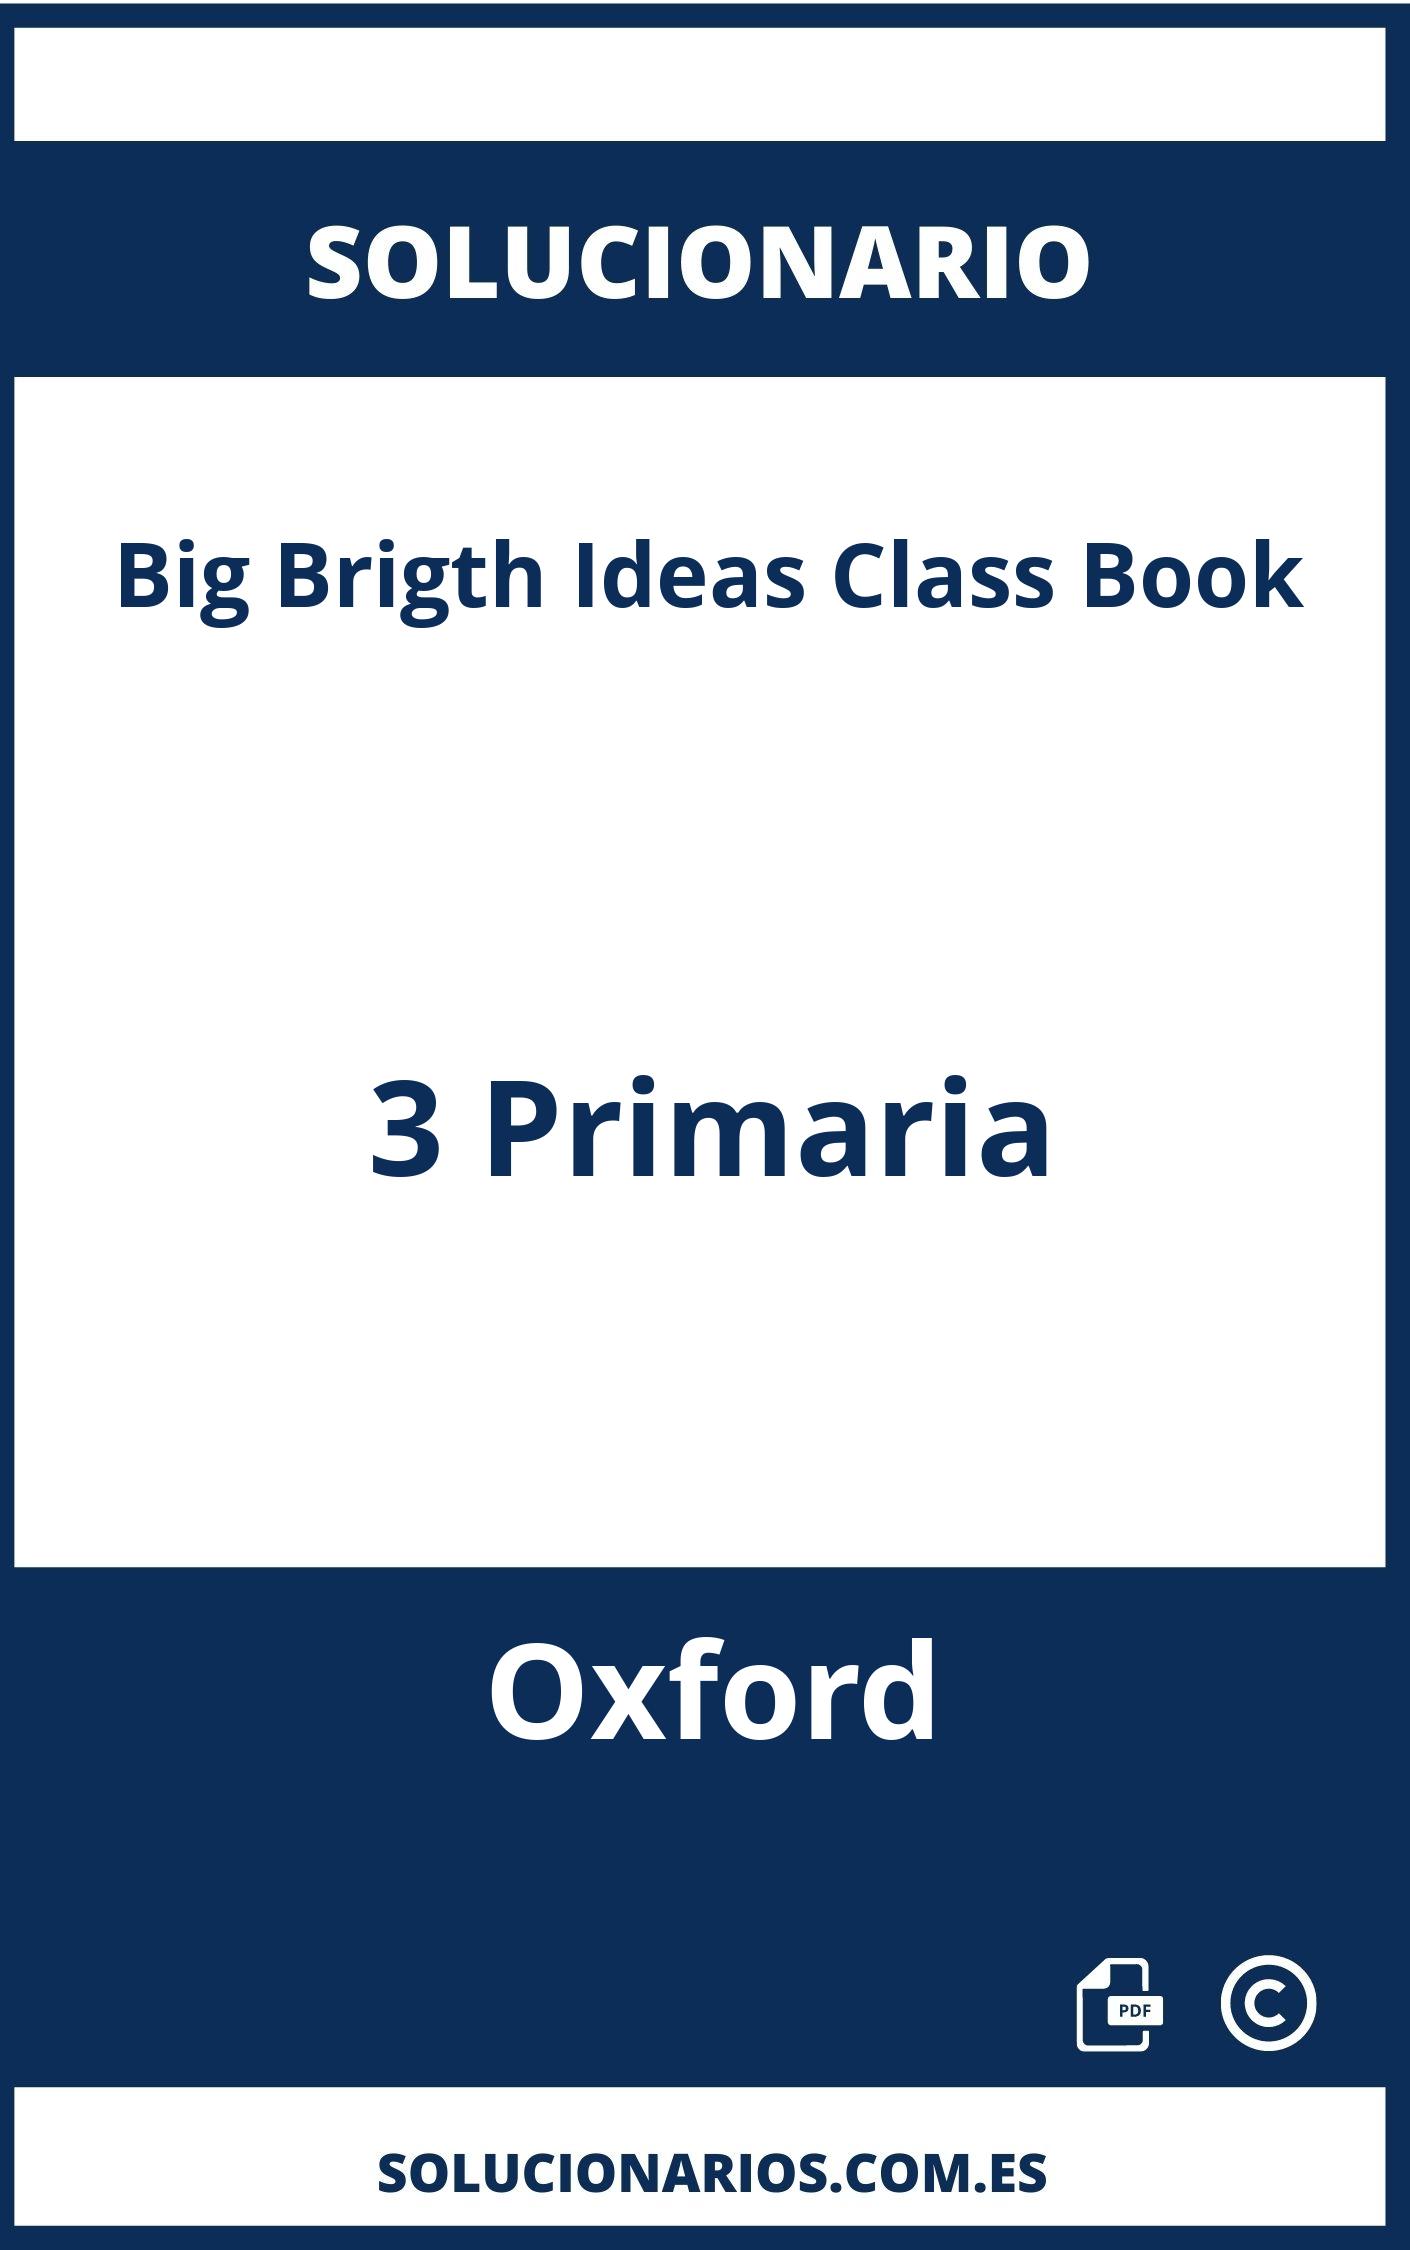 Solucionario Big Brigth Ideas Class Book 3 Primaria Oxford